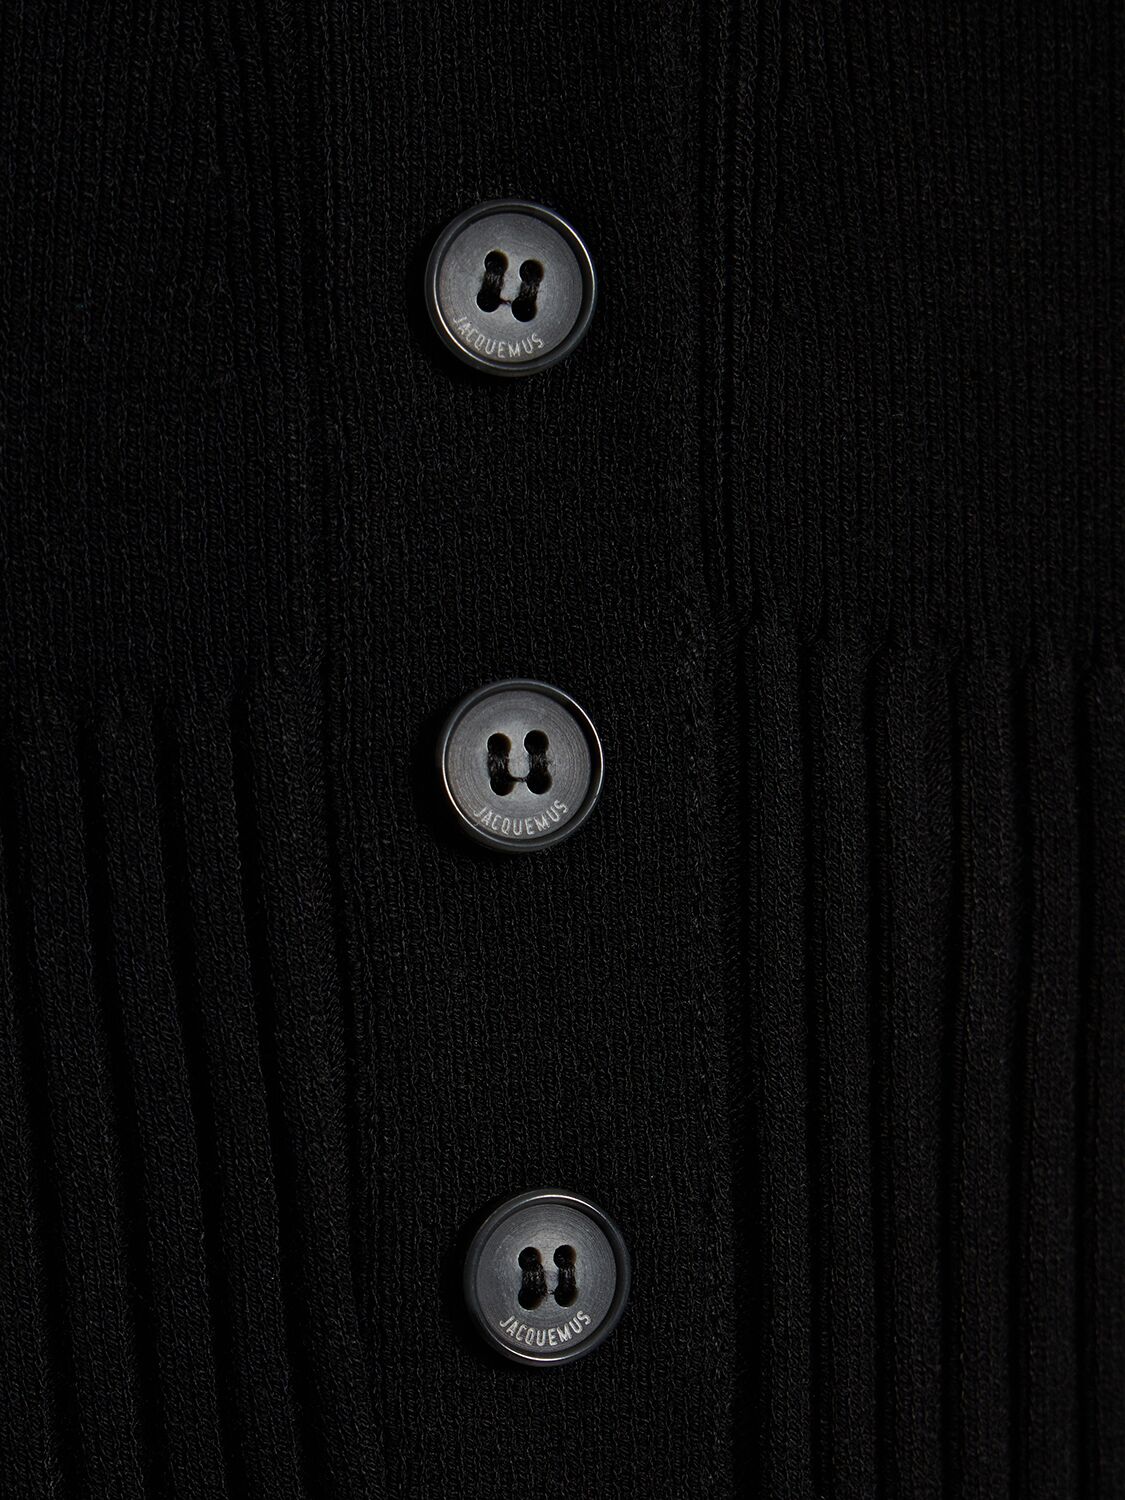 Shop Jacquemus Le Body Yauco Viscose Knit Bodysuit In Black